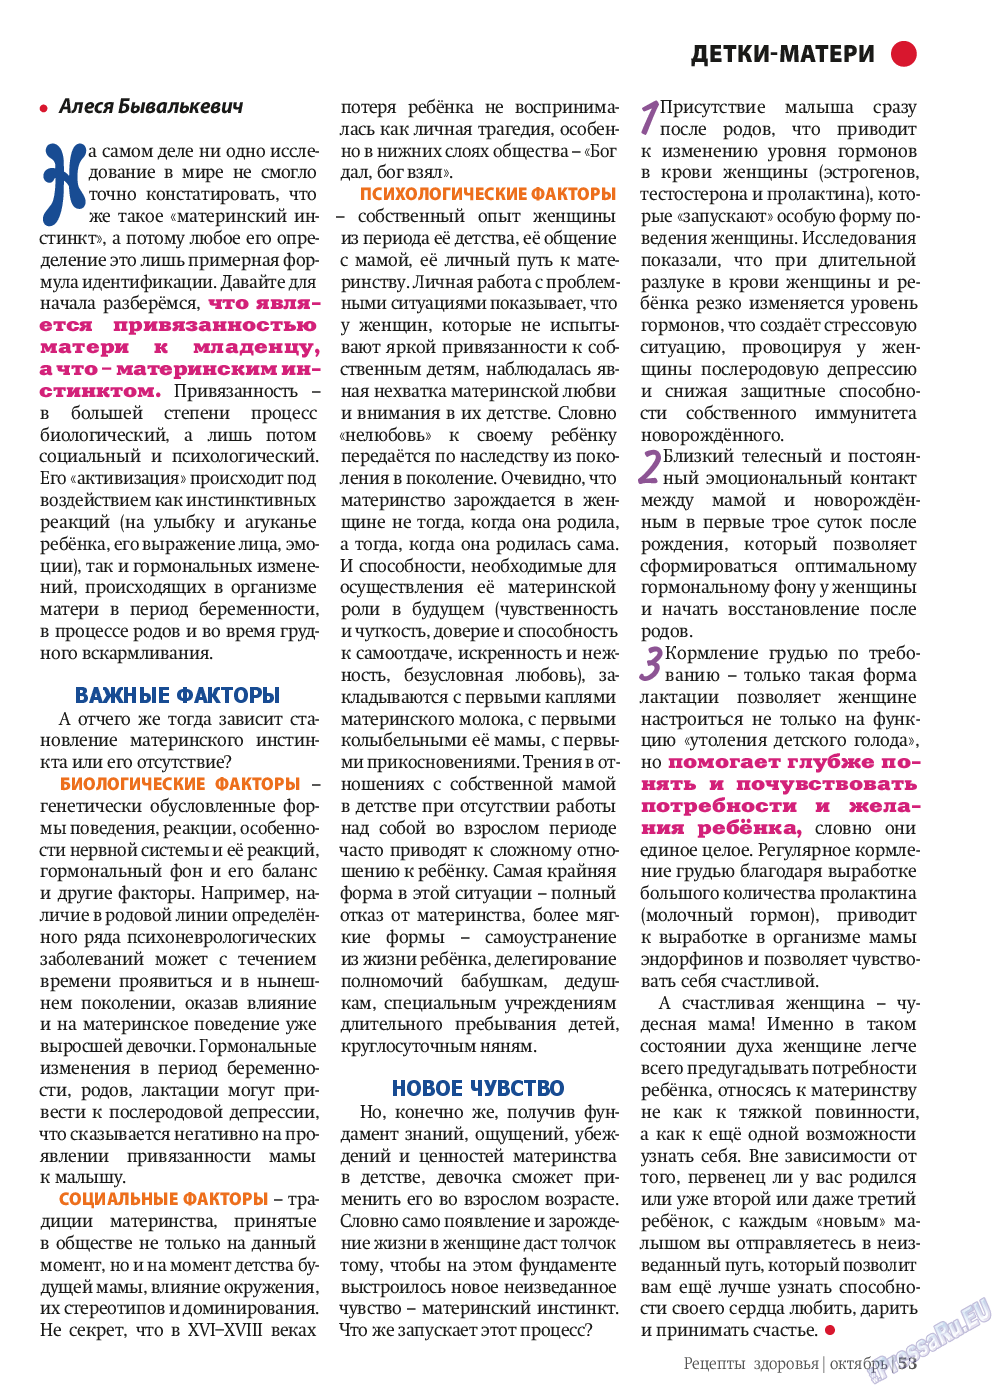 Рецепты здоровья, журнал. 2013 №10 стр.53